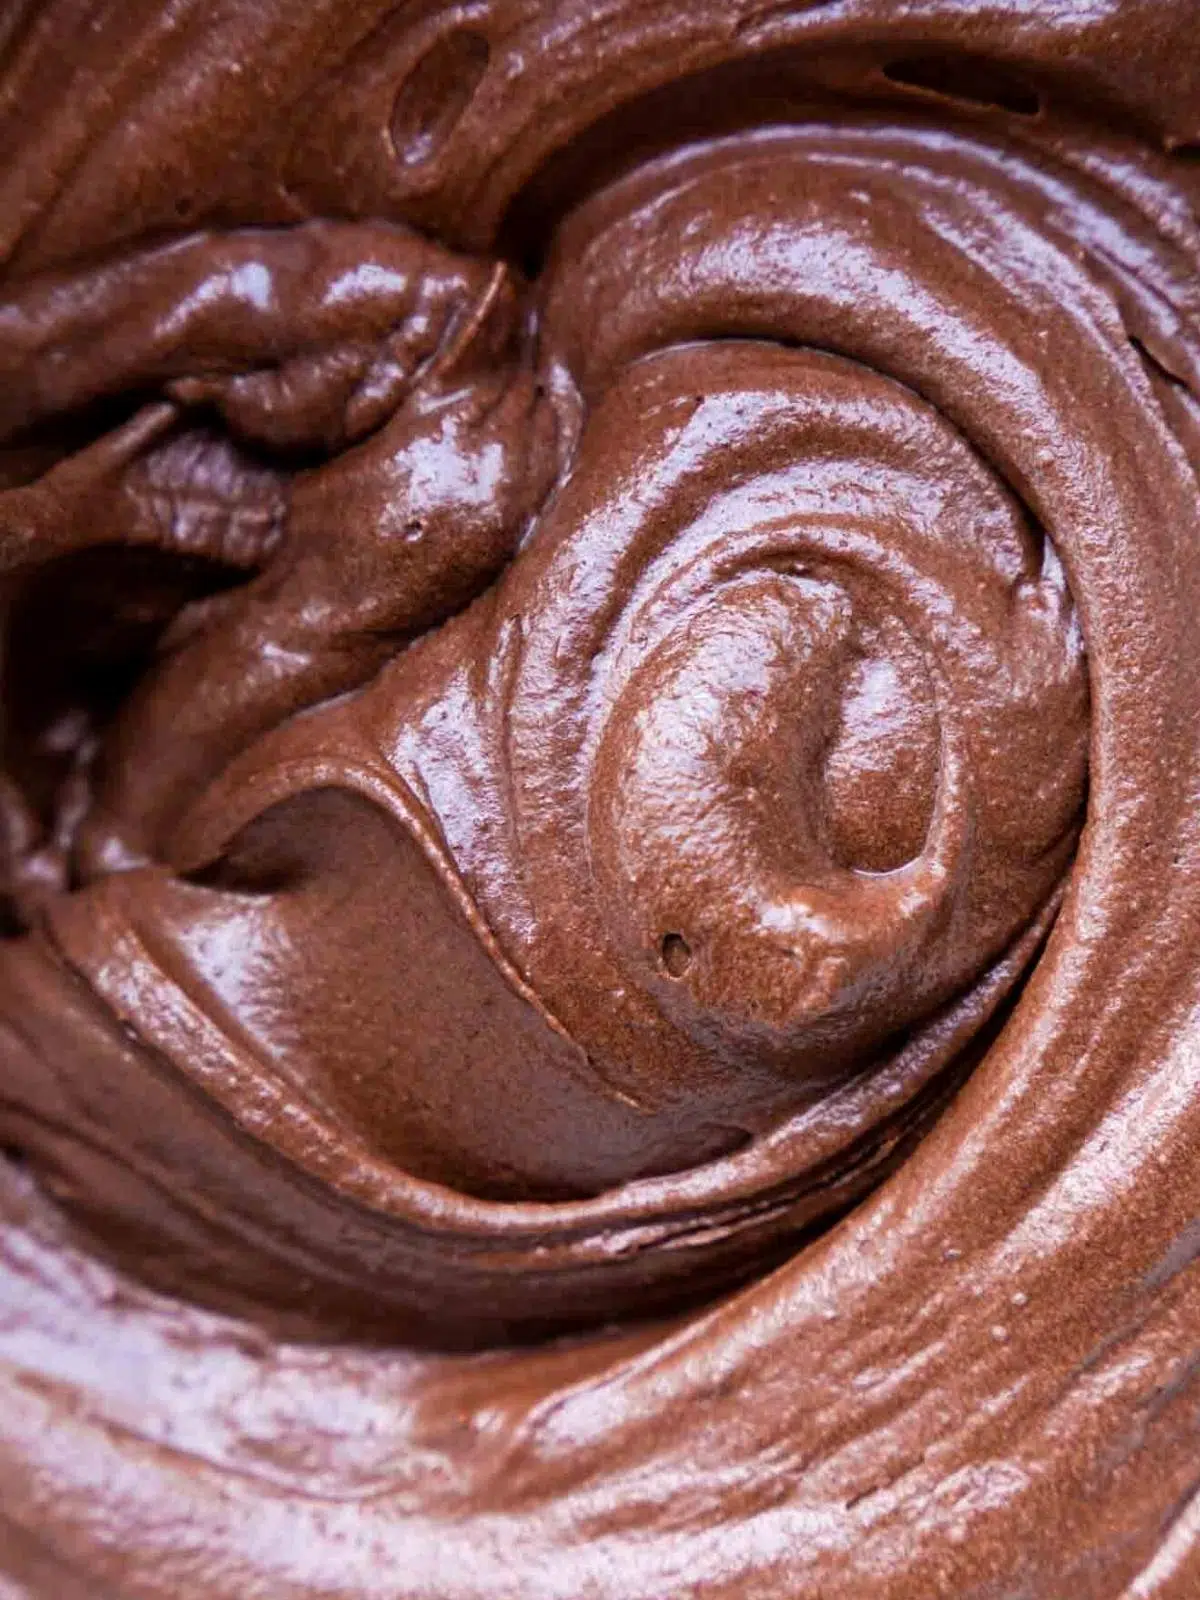 Swirls of chocolate cake batter.